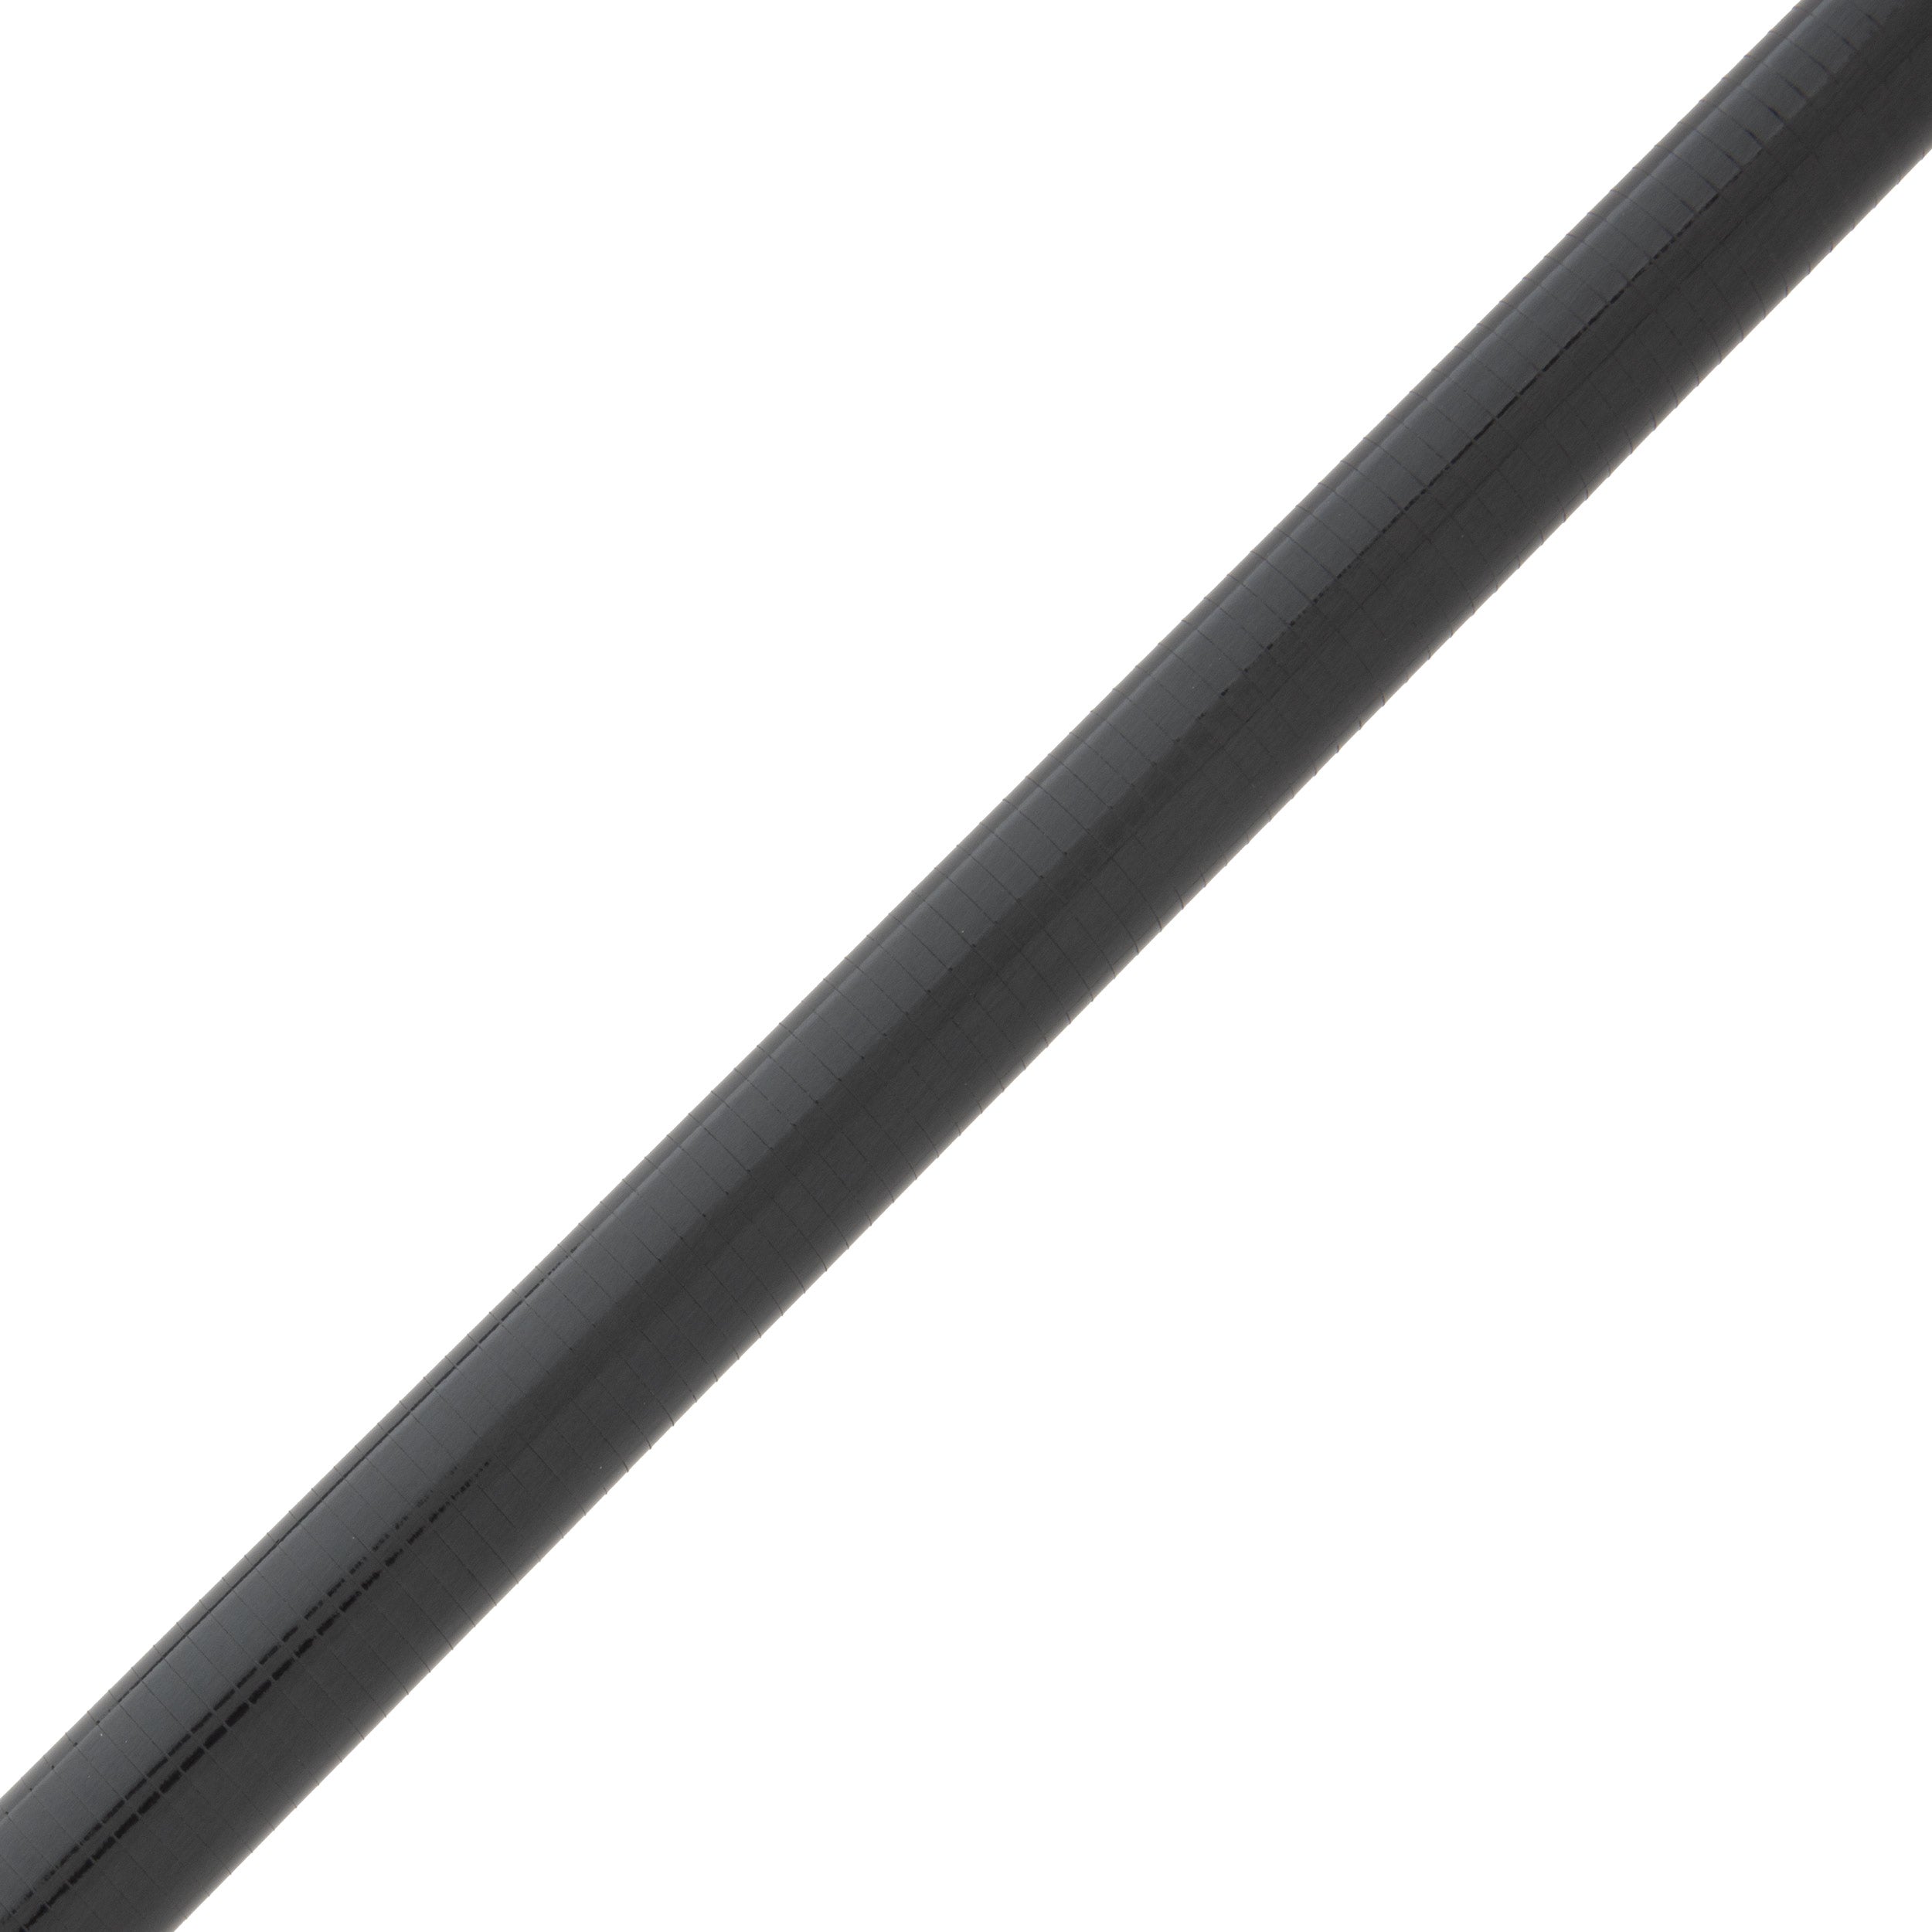 Cashion CR6r Carbon Fiber Cranking Rod Blank - CR6r-iCB946